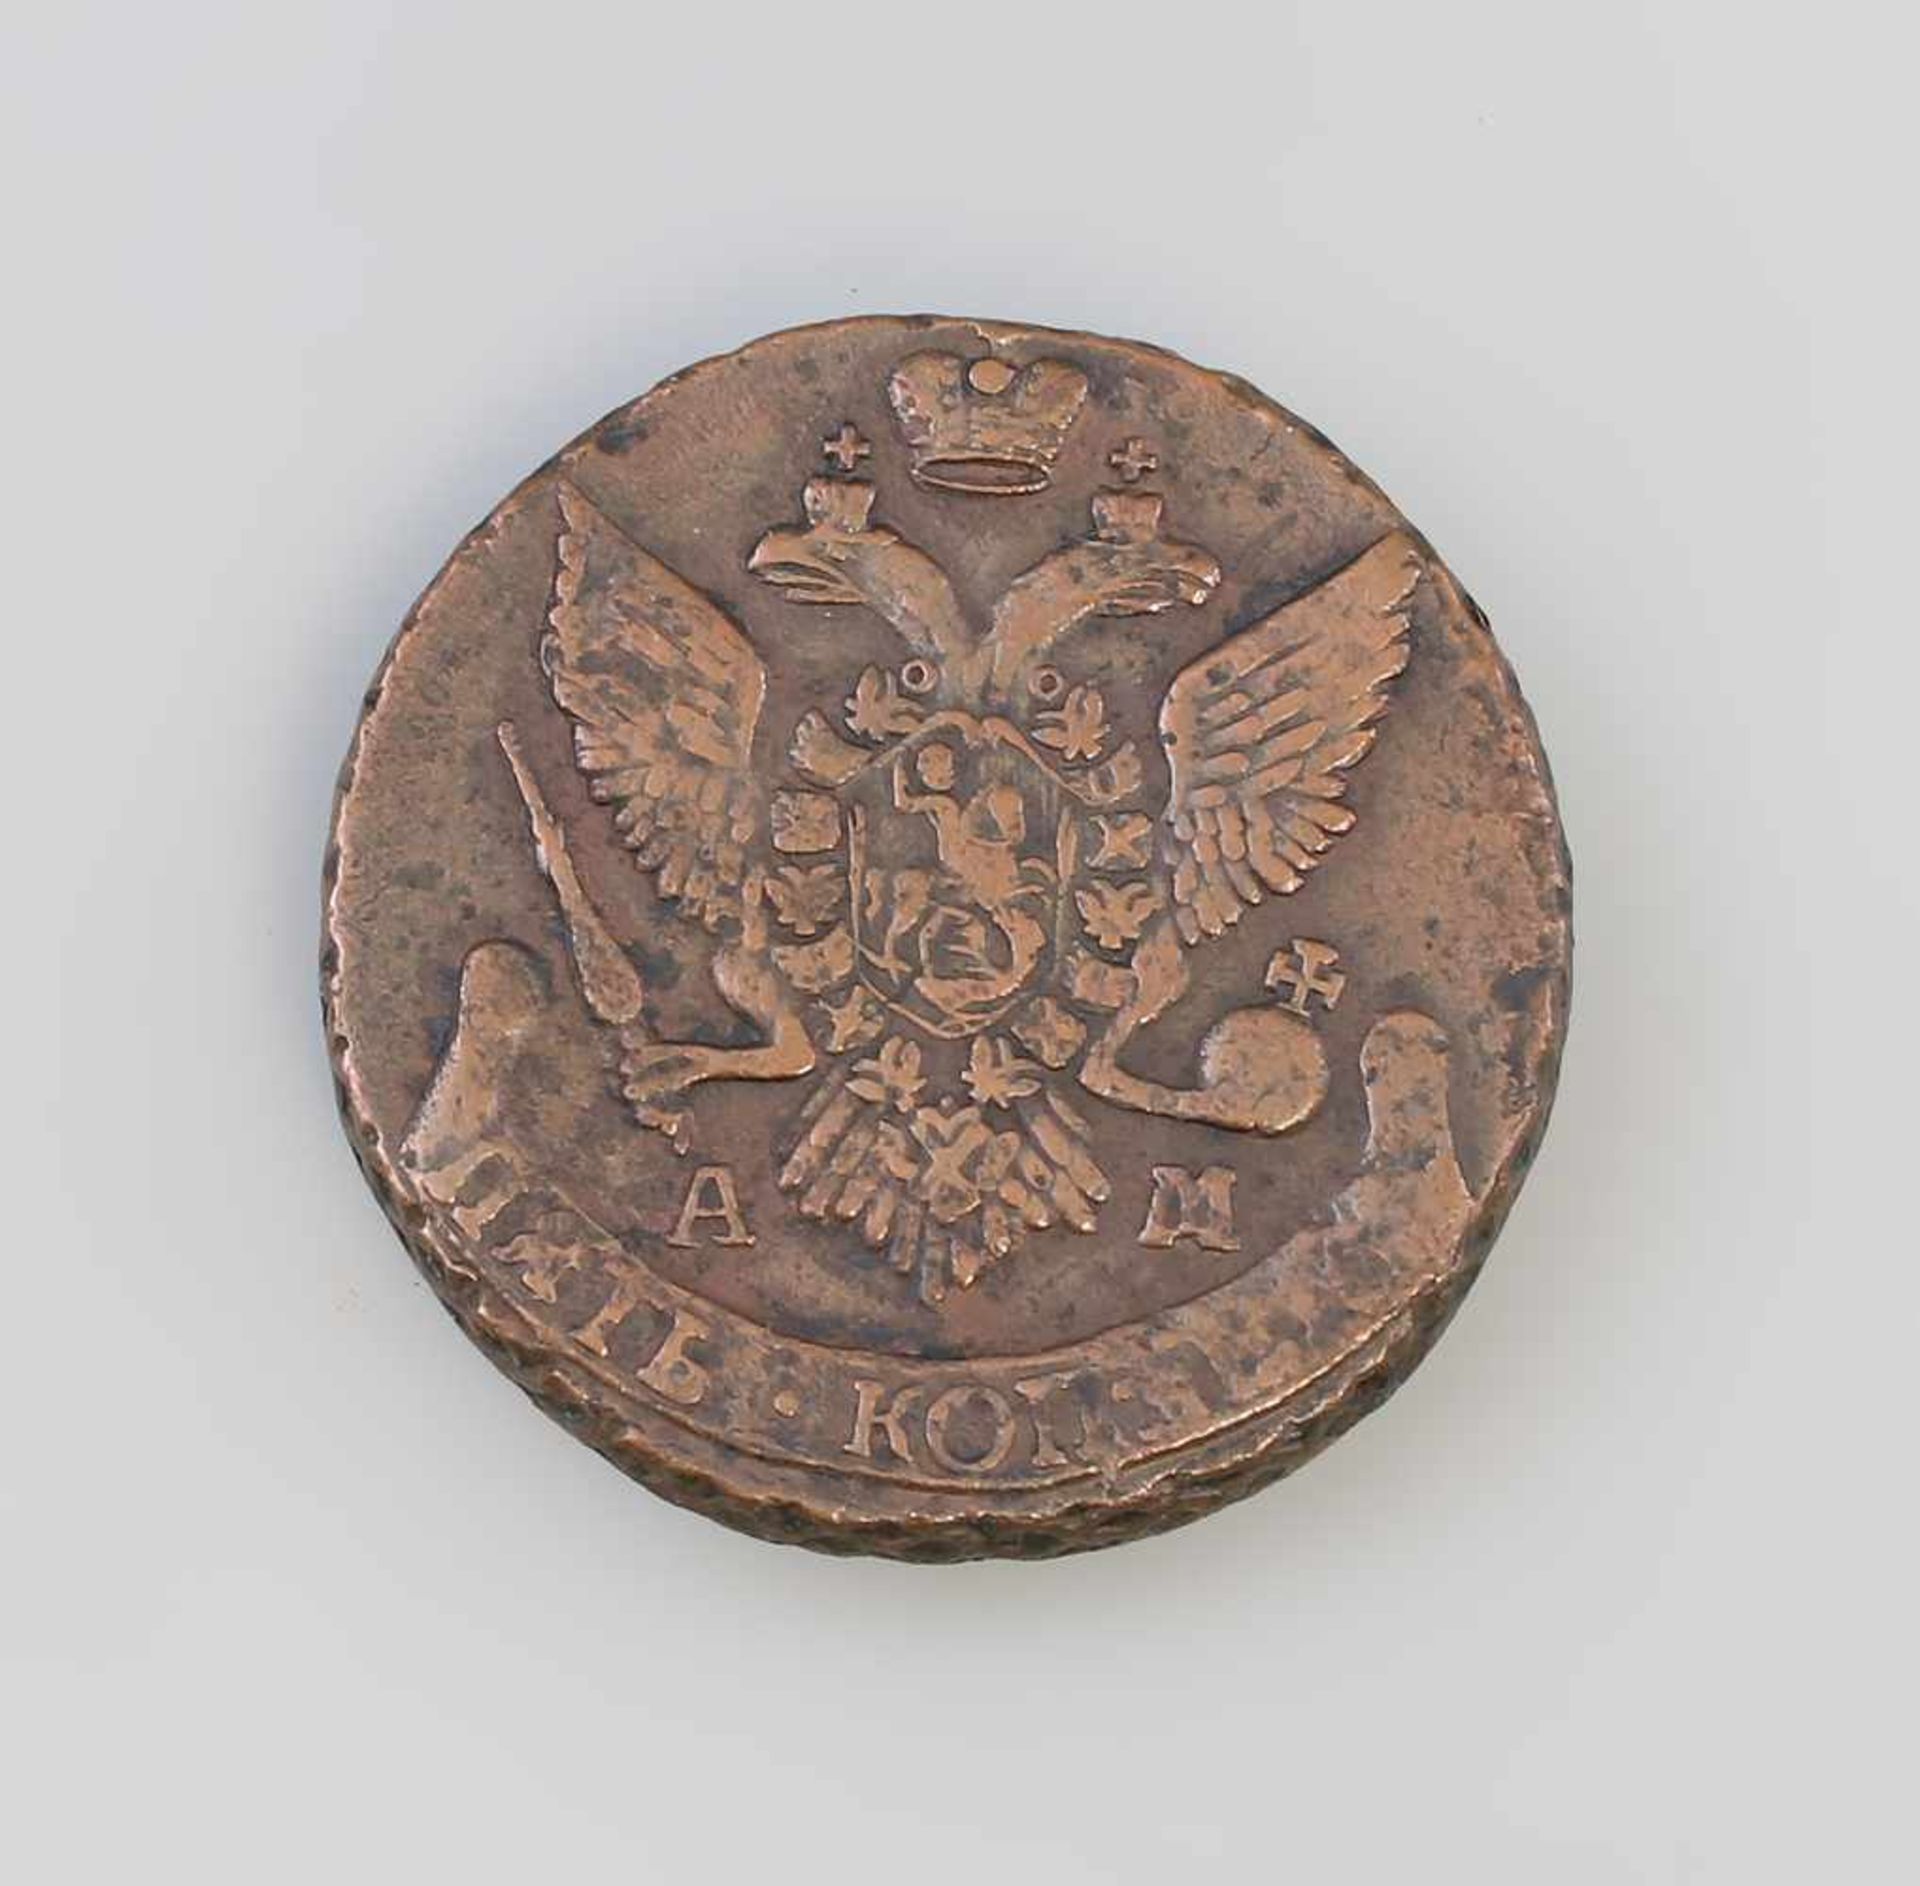 5 Kopeken Russland 1794 Katatrina II (1762-1796), AM Anninsk, Kupfer, 50,7 g, D 41 mm - Bild 2 aus 2